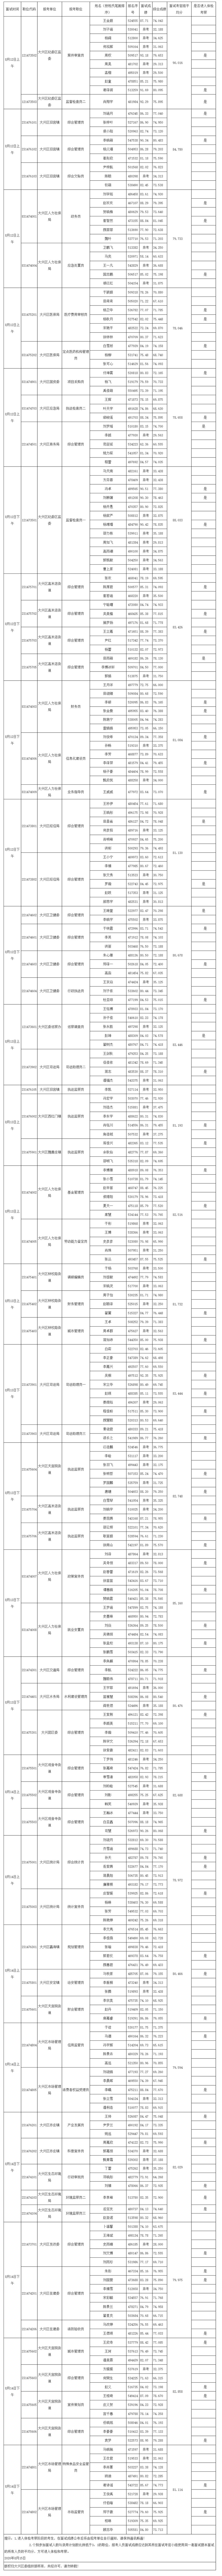 北京市2020年考试录用公务员大兴区面试成绩公示1_副本